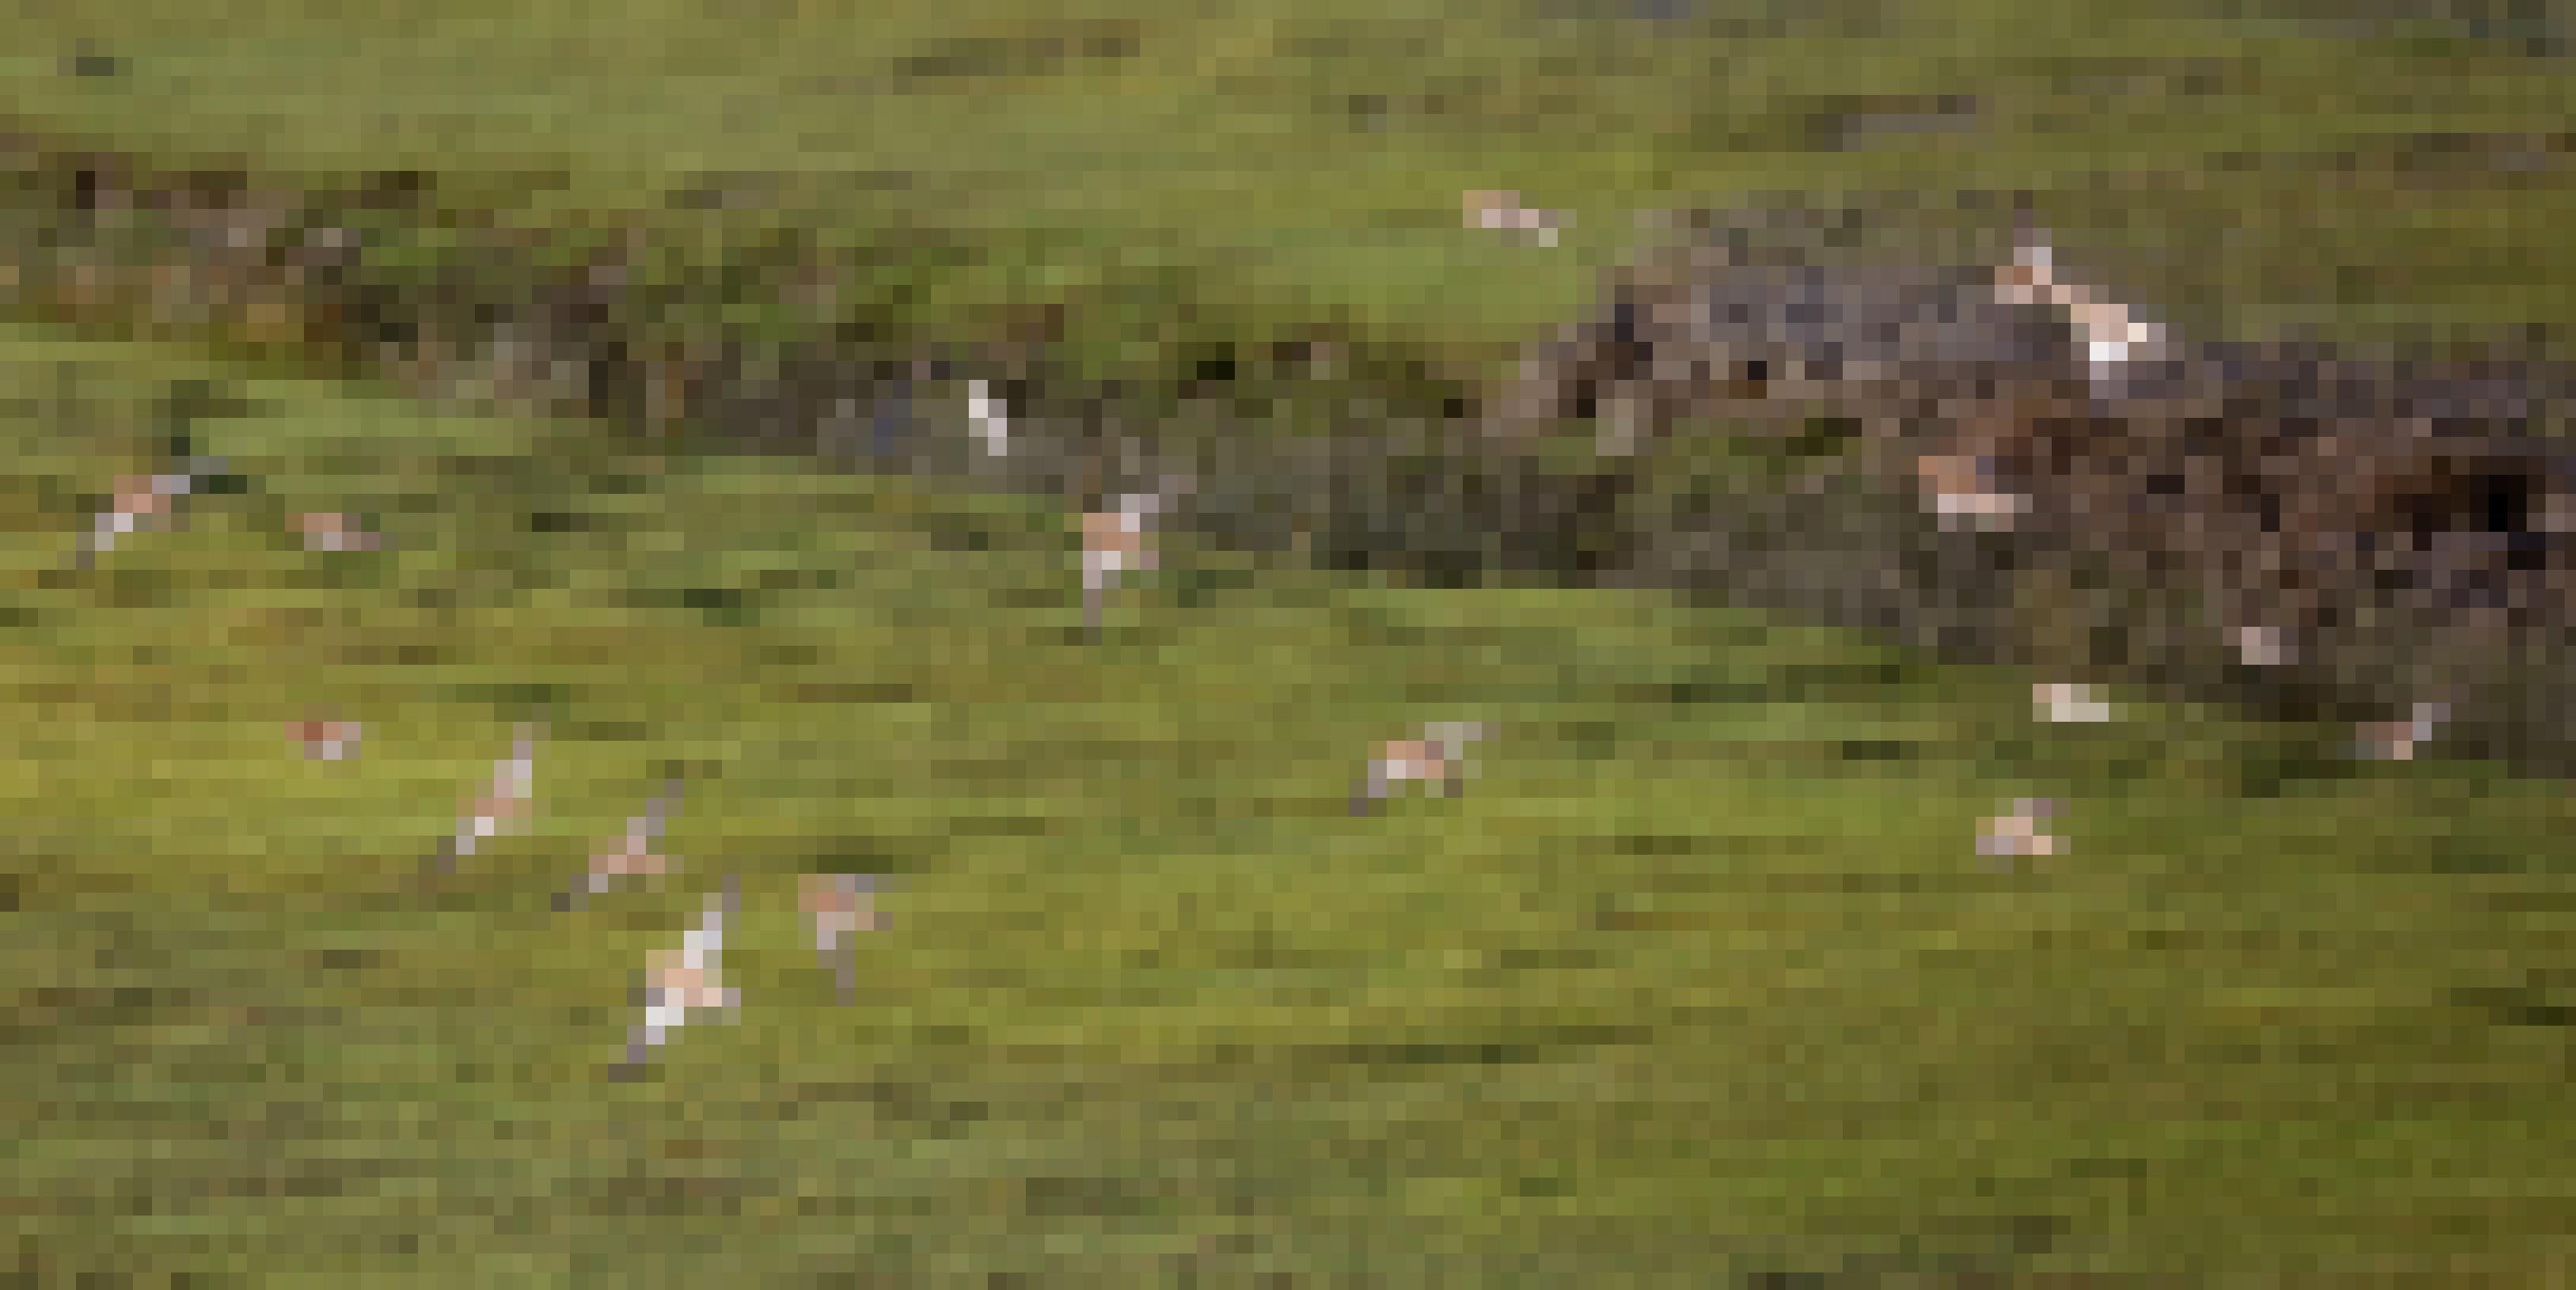 eine Gruppe von Vögeln fliegt über ein grasbewachsenes Feld [AI]